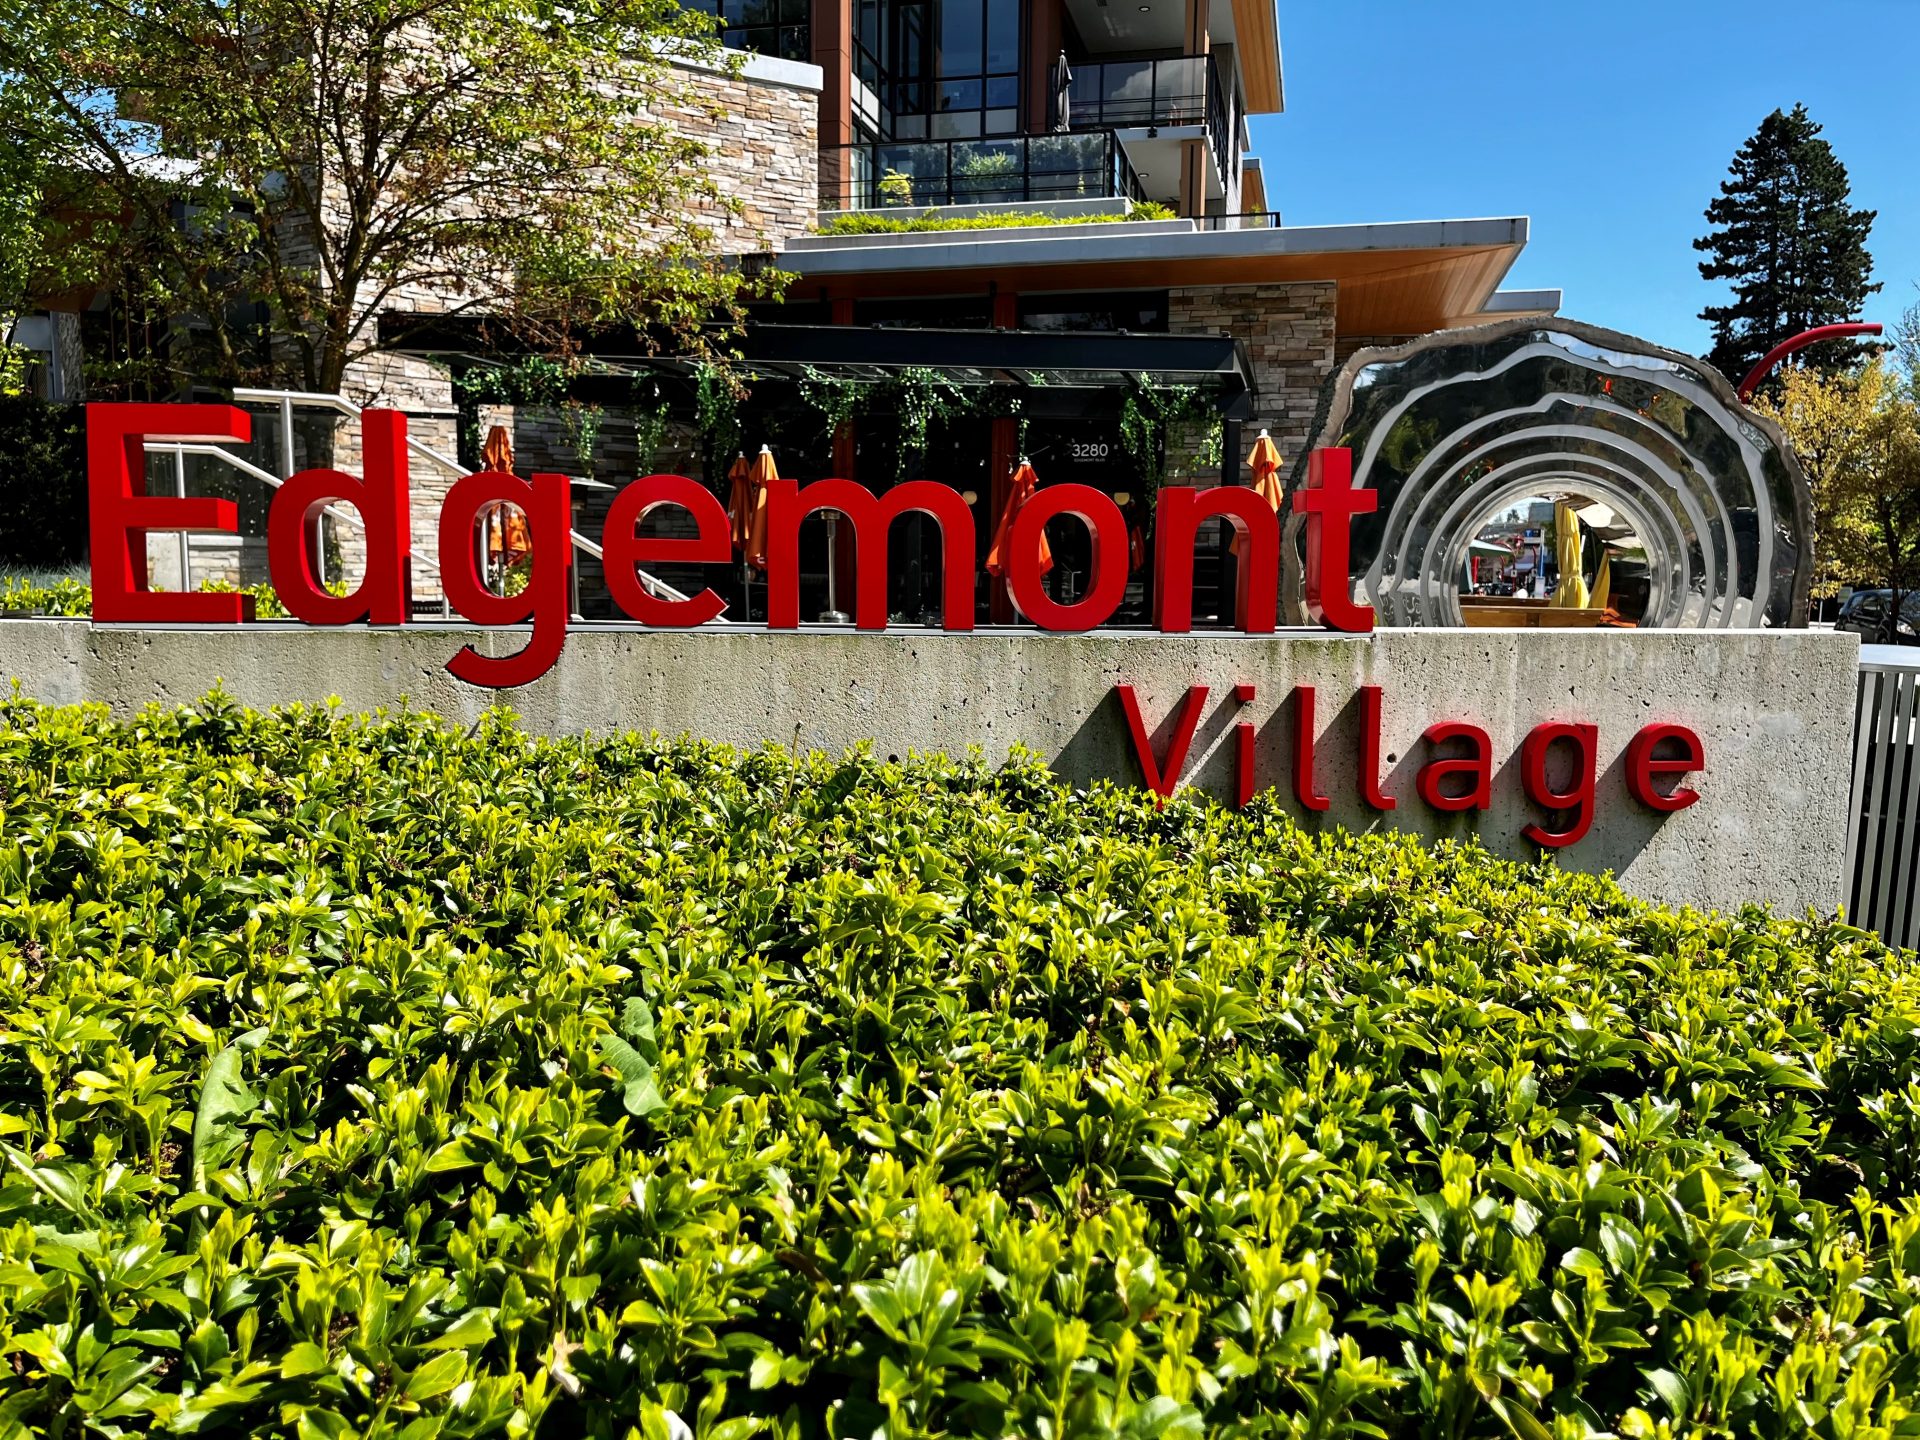 Edgemont Village